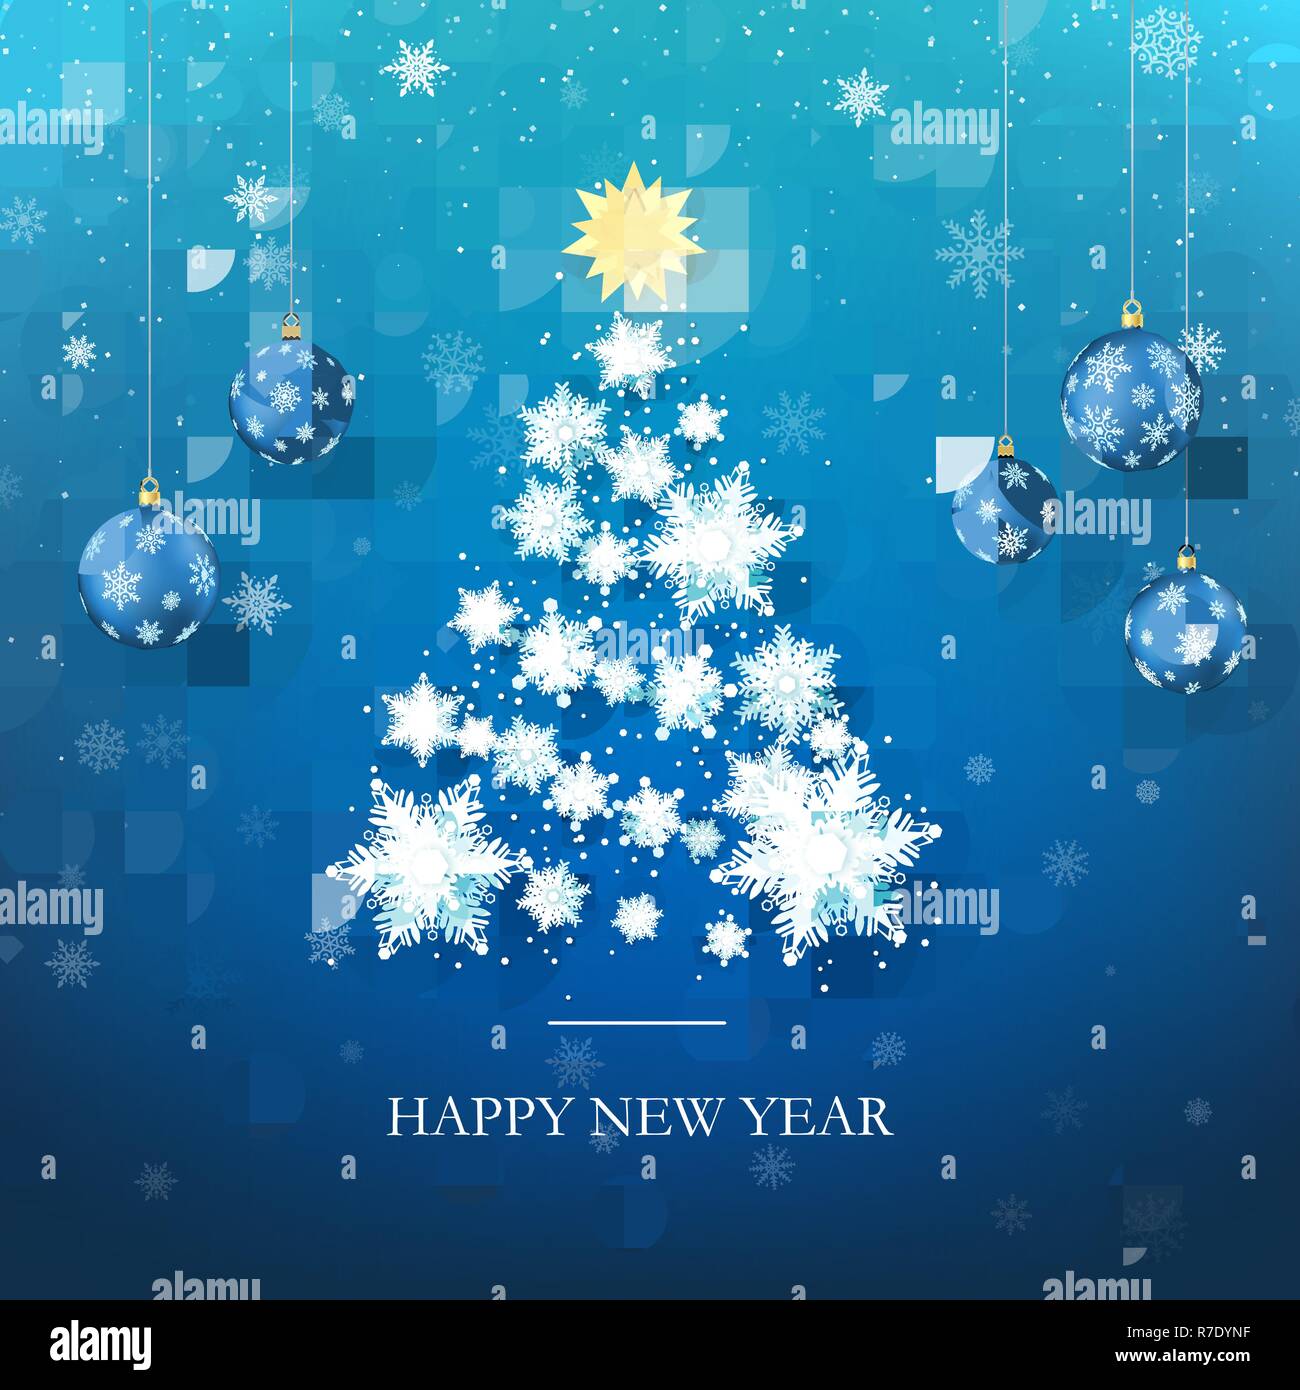 Frohes Neues Jahr Grußkarte in blauen Farben. Weihnachtsbaum Silhouette aus Papier Schneeflocken. Frohes Neues Jahr und Frohe Weihnachten. Abstrakte Urlaub Bac Stock Vektor